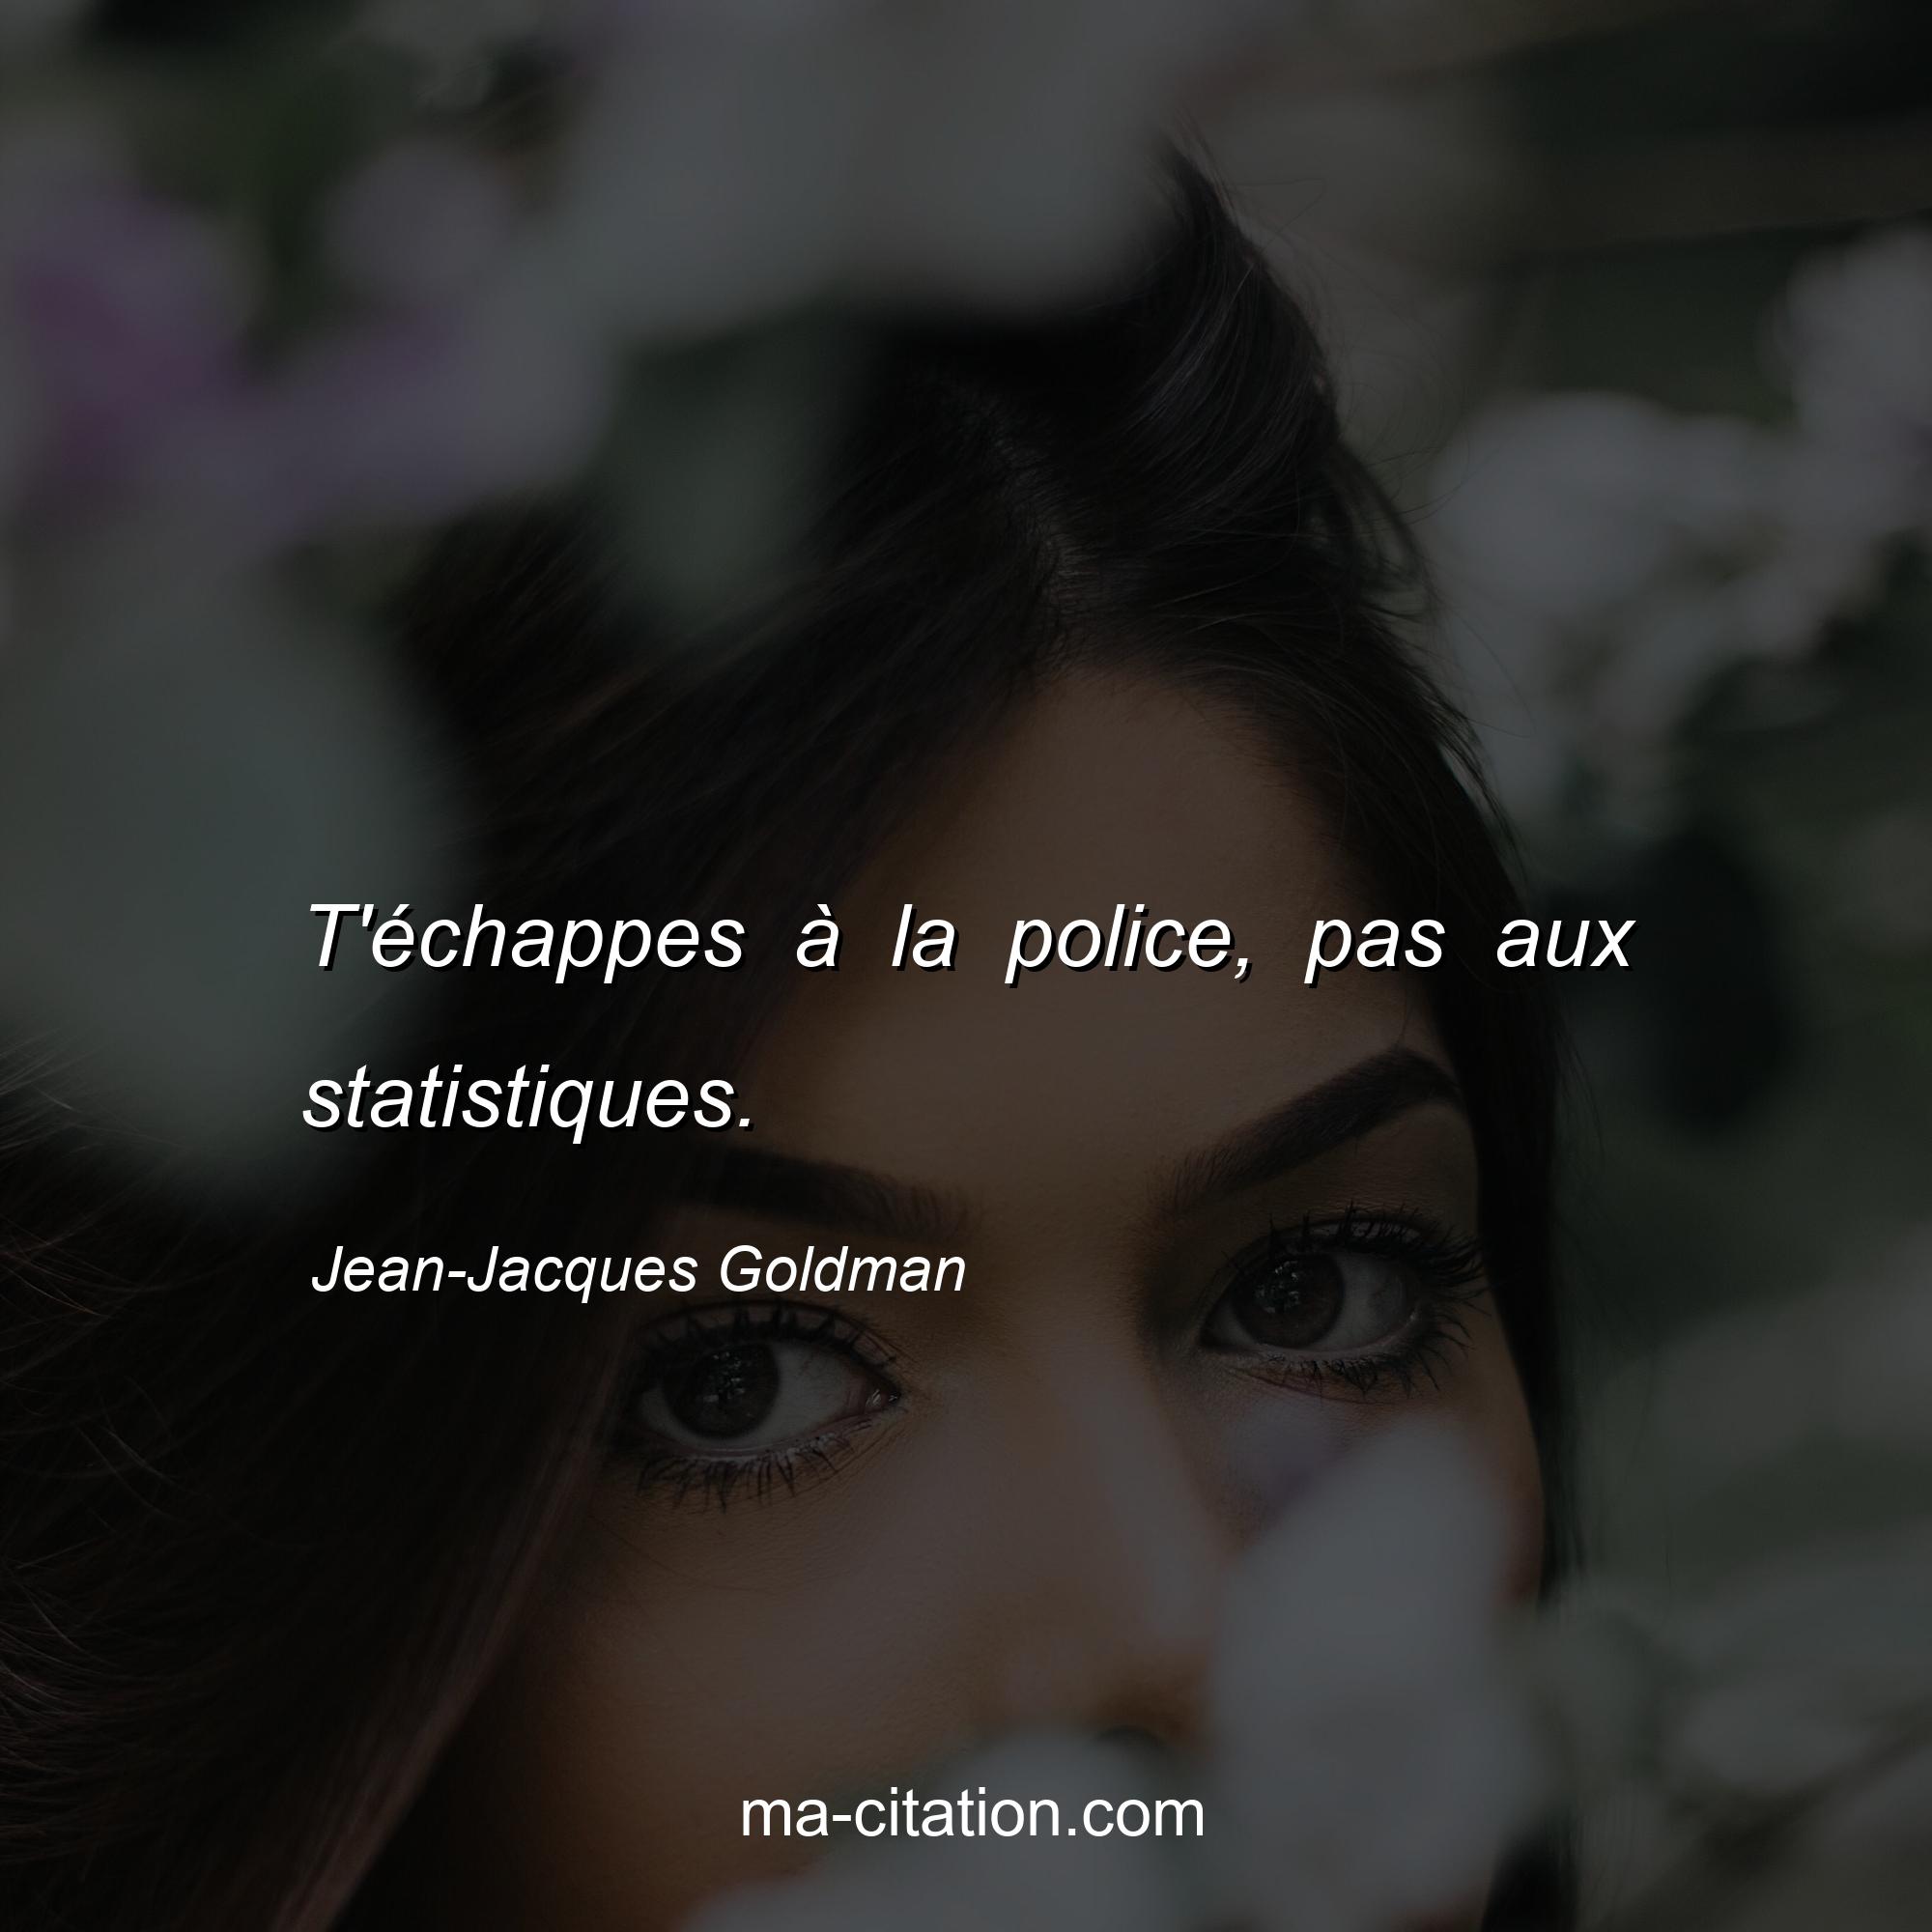 Jean-Jacques Goldman : T'échappes à la police, pas aux statistiques.